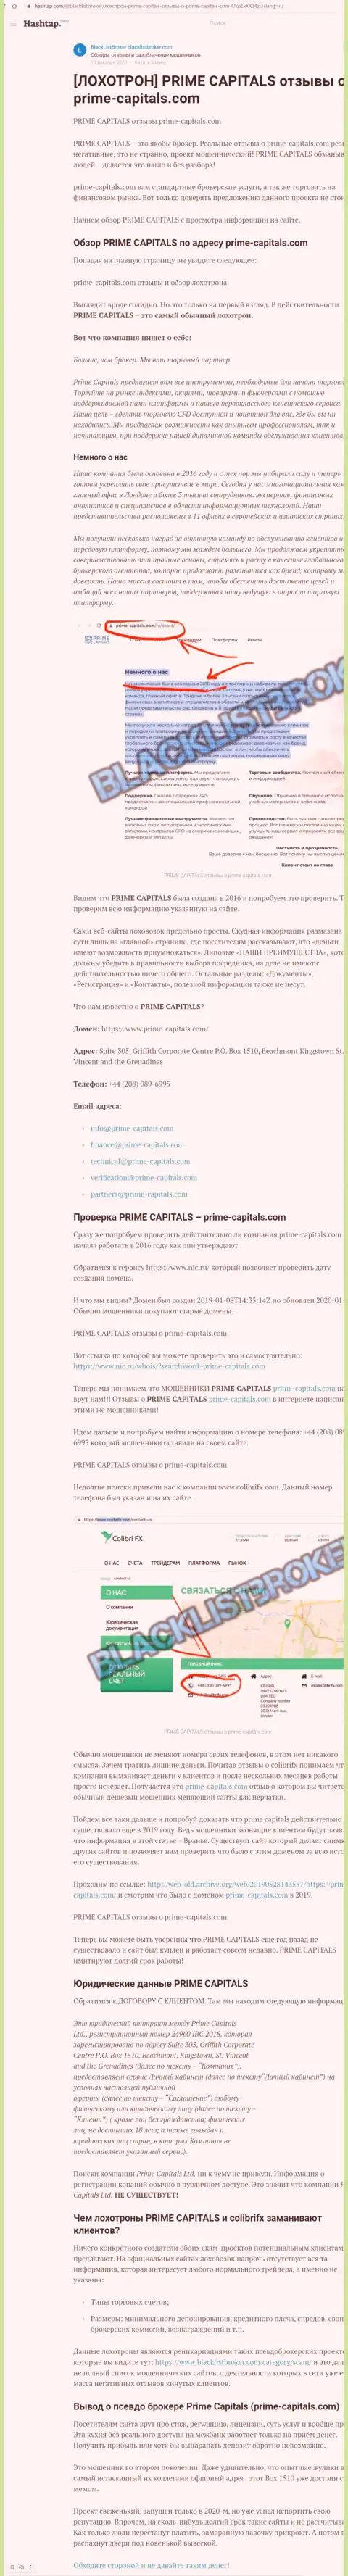 Prime Capitals это нахальный обман клиентов (обзорная статья неправомерных уловок)